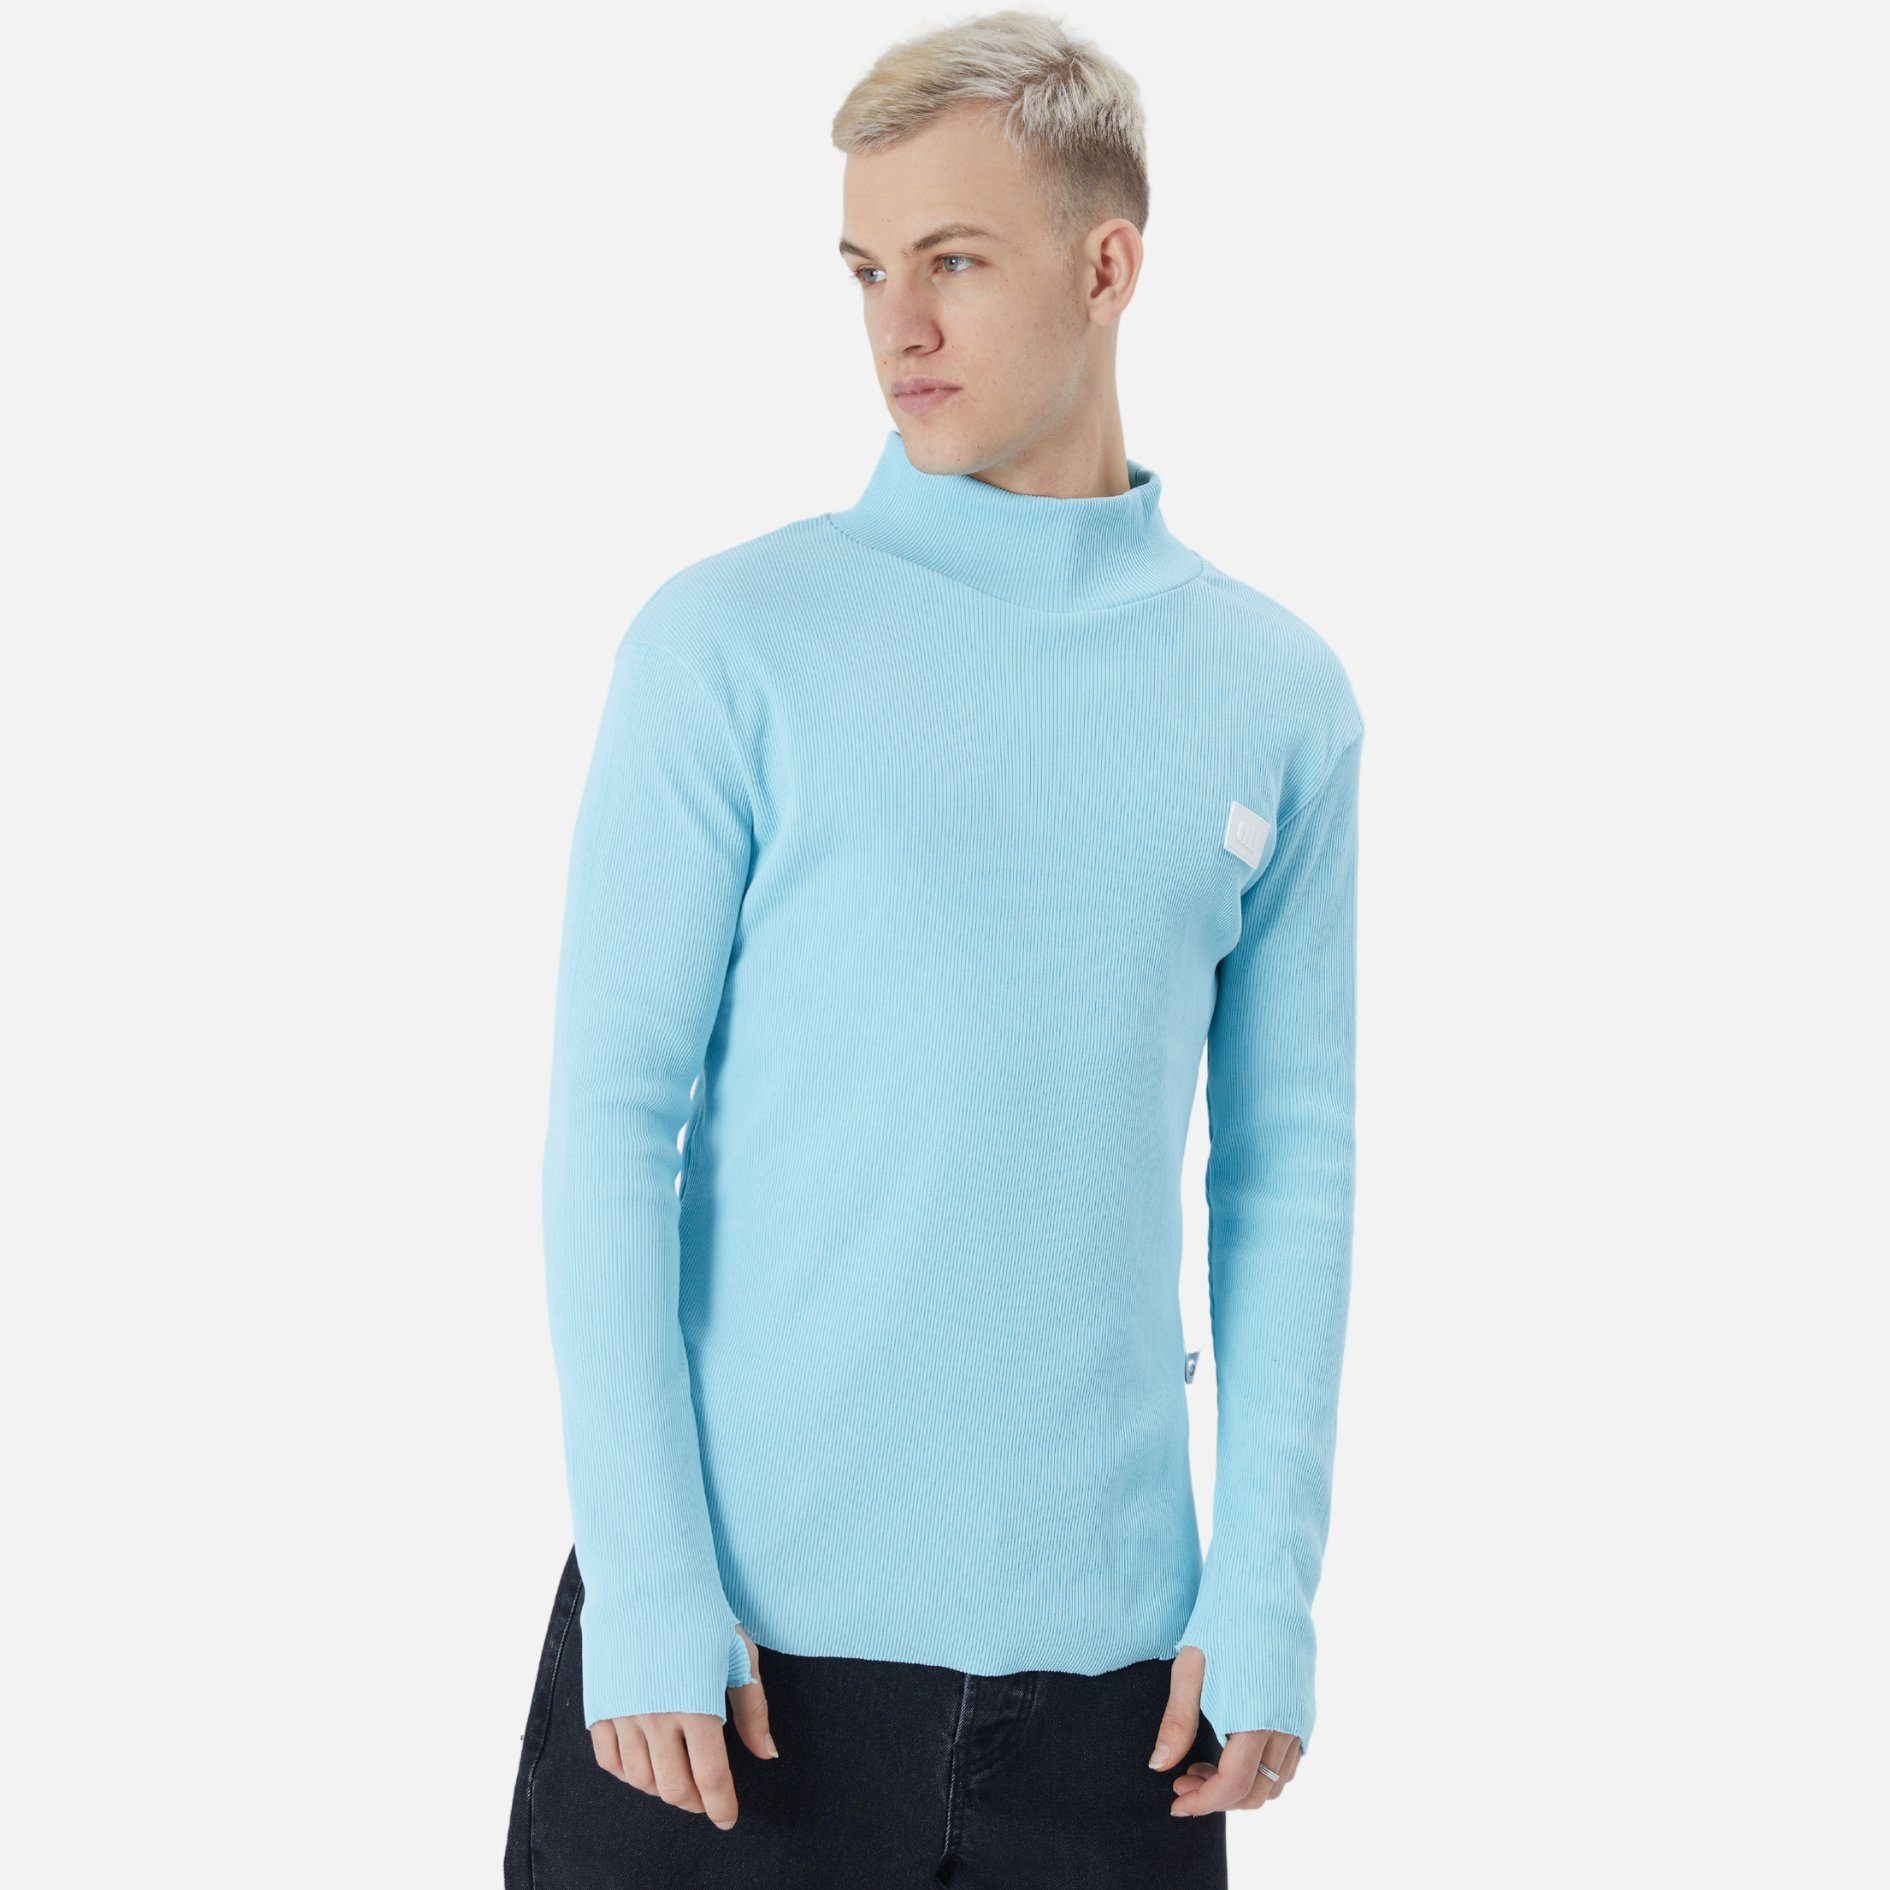 Pullover COFI Fit Herren Casuals Babyblau Sweatshirt Rundhals Regular Sweatshirt